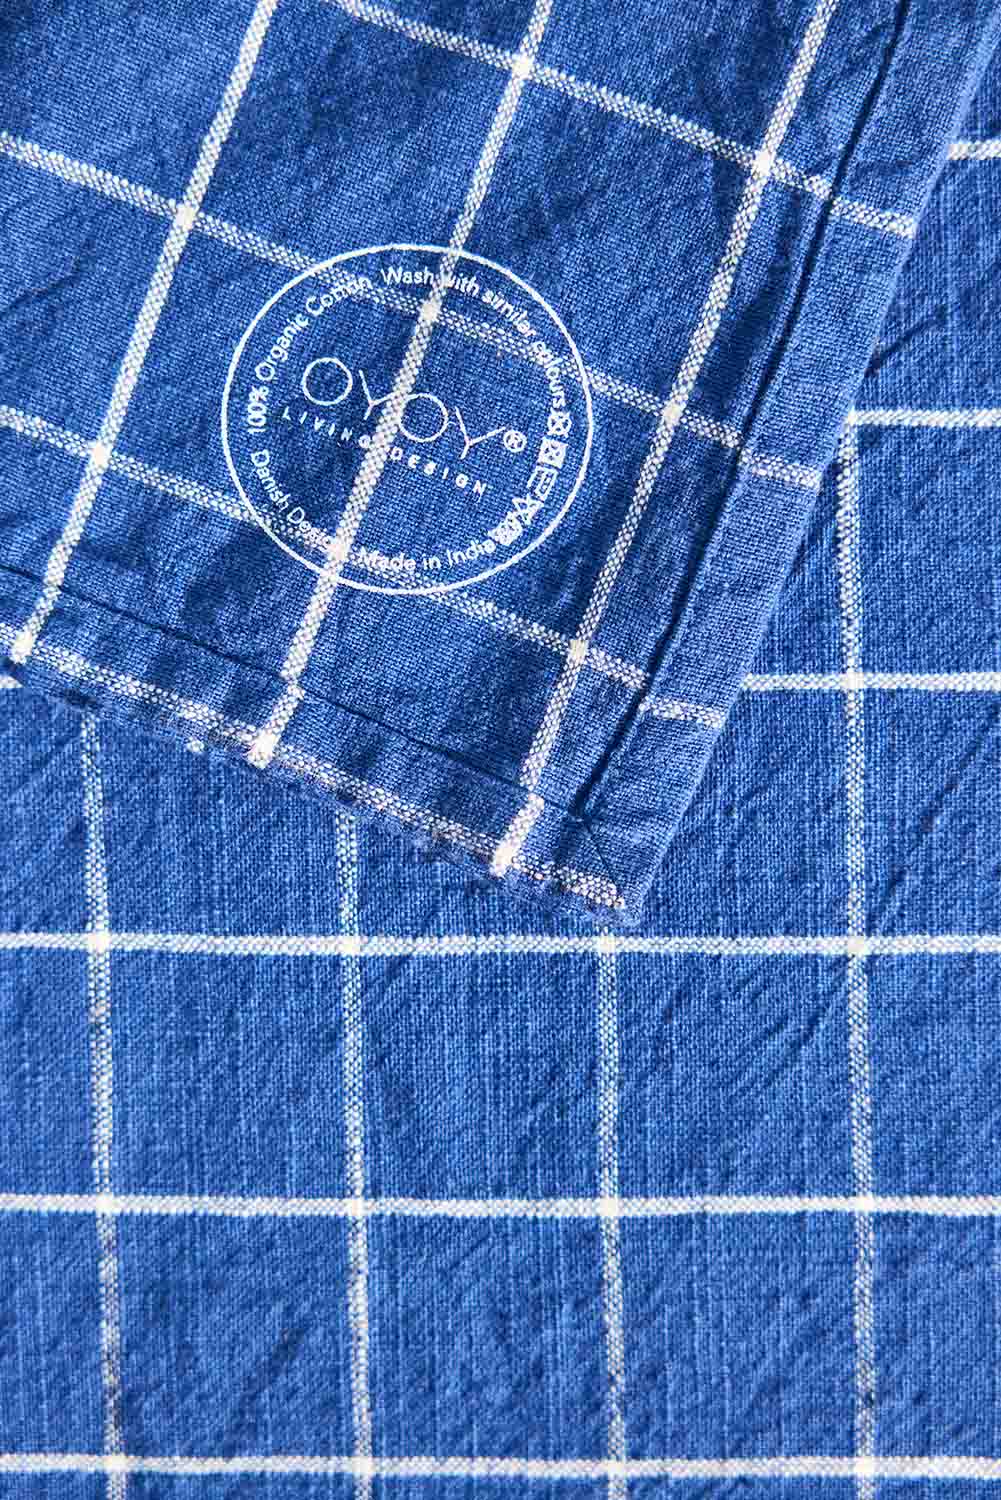 grid napkin set in dark blue 2